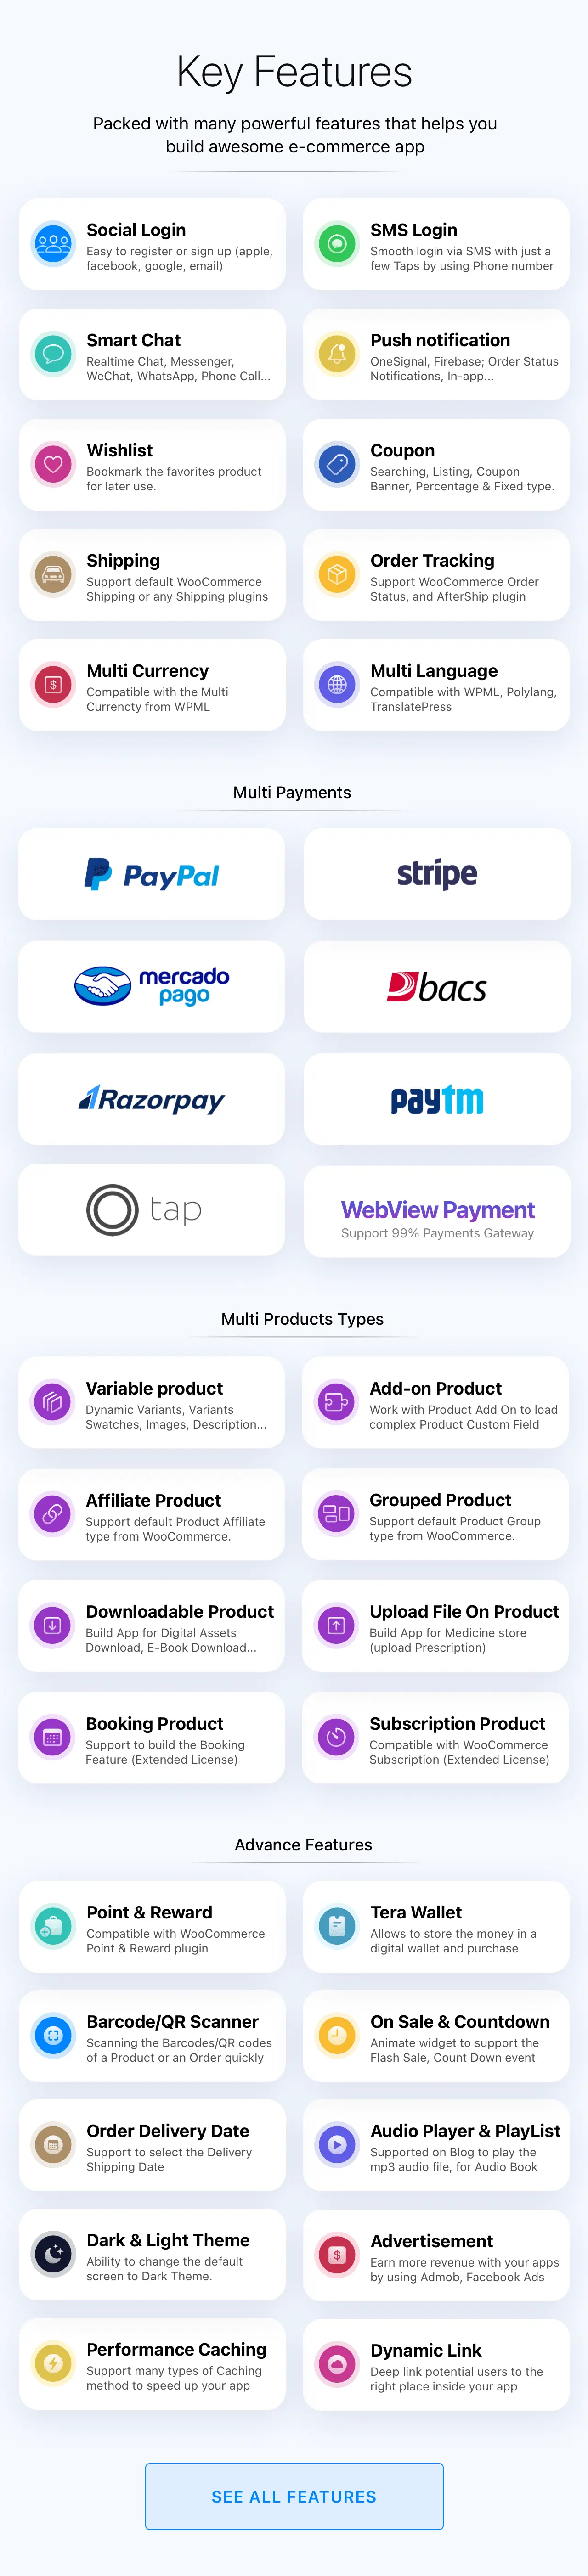 Fluxstore Multi Vendor - Flutter E-commerce Full App-1